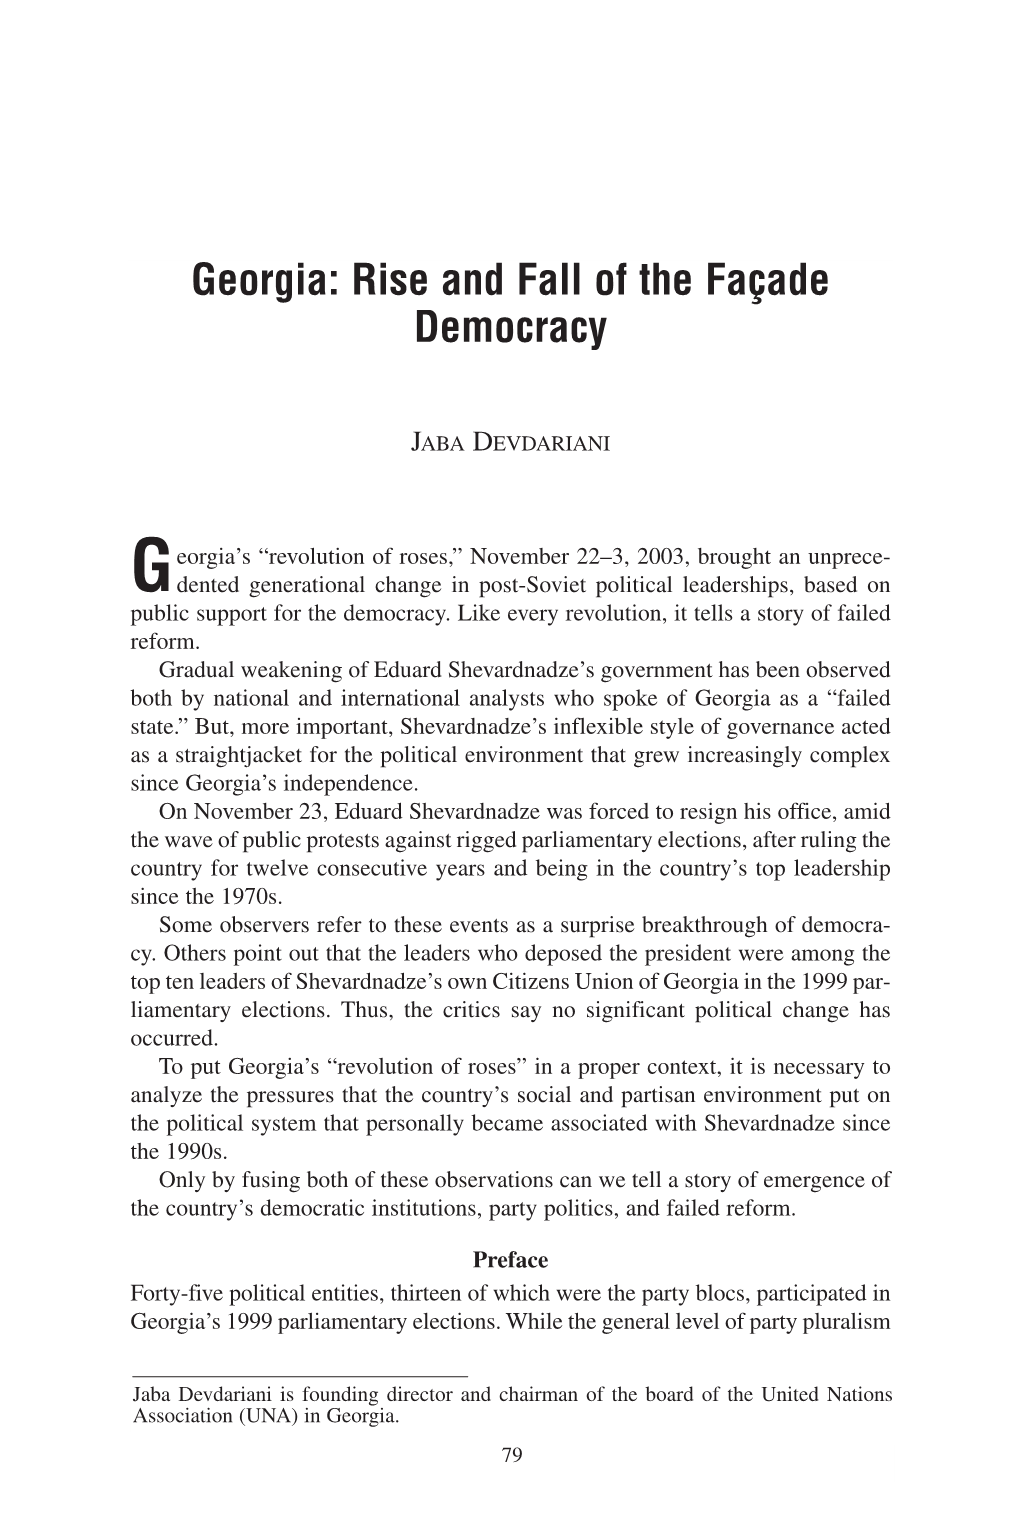 Georgia: Rise and Fall of the Façade Democracy